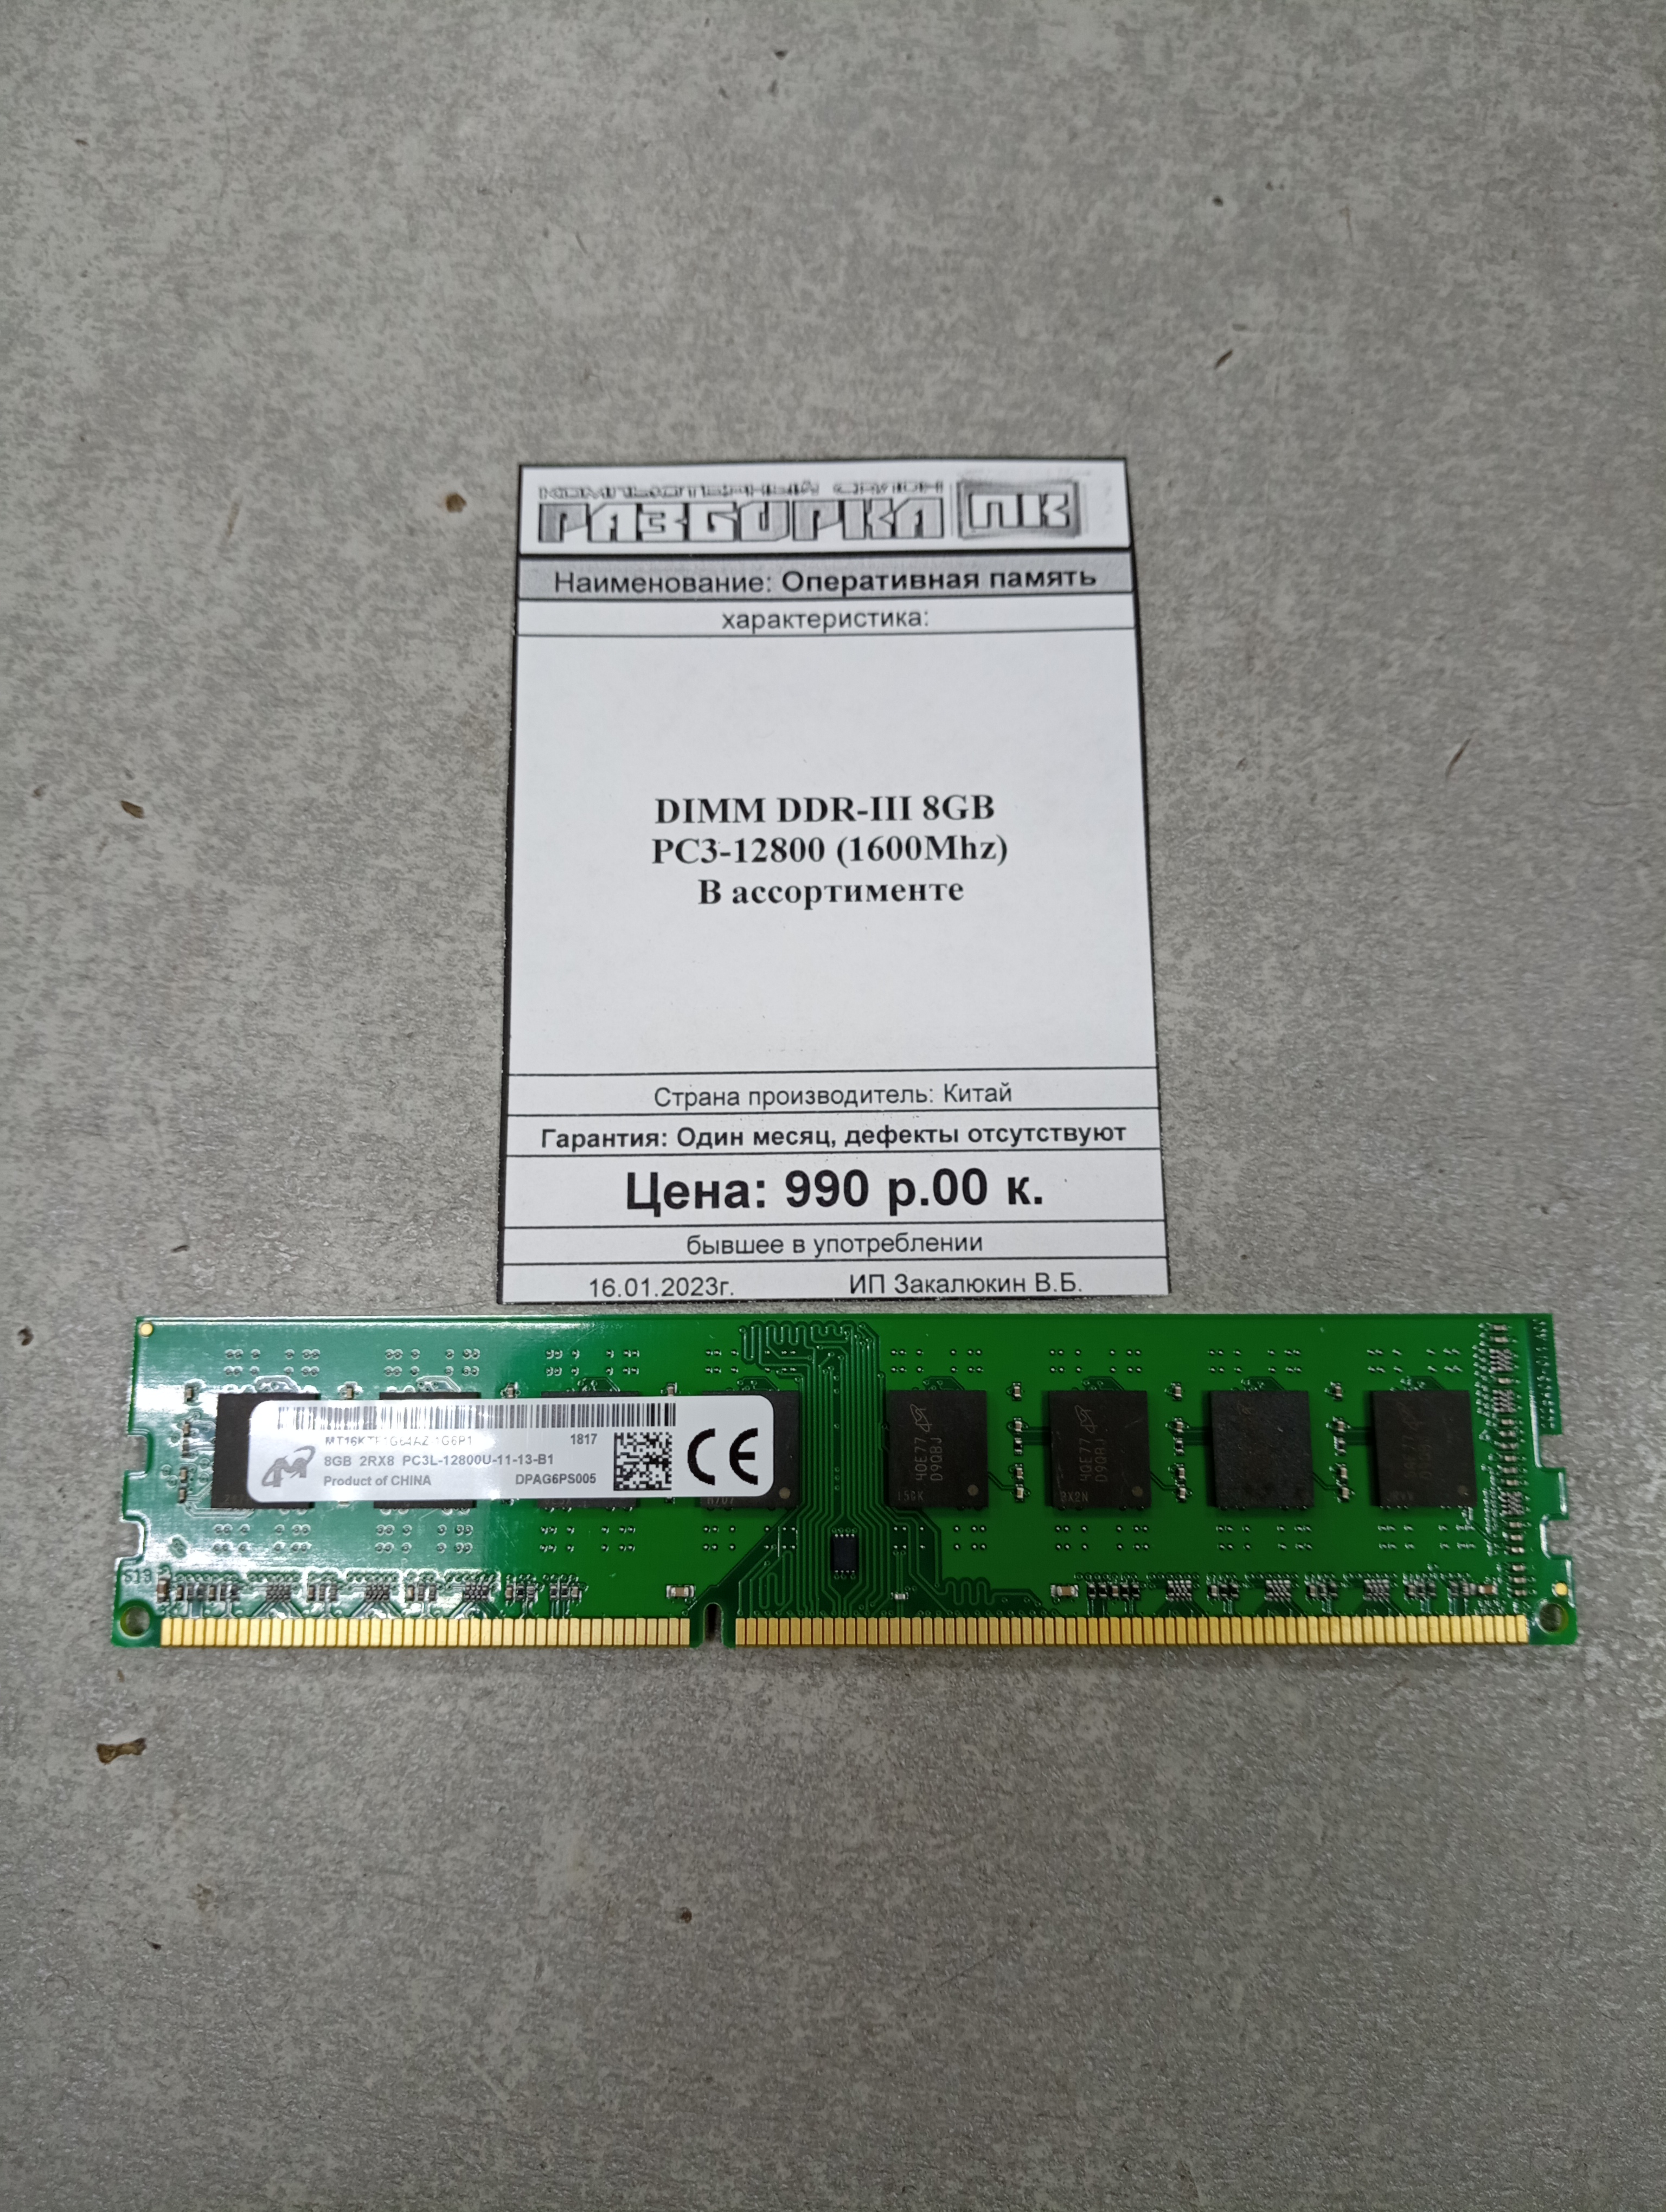 ОЗУ DIMM DDR-III 8GB PC3-12800 (1600Mhz)